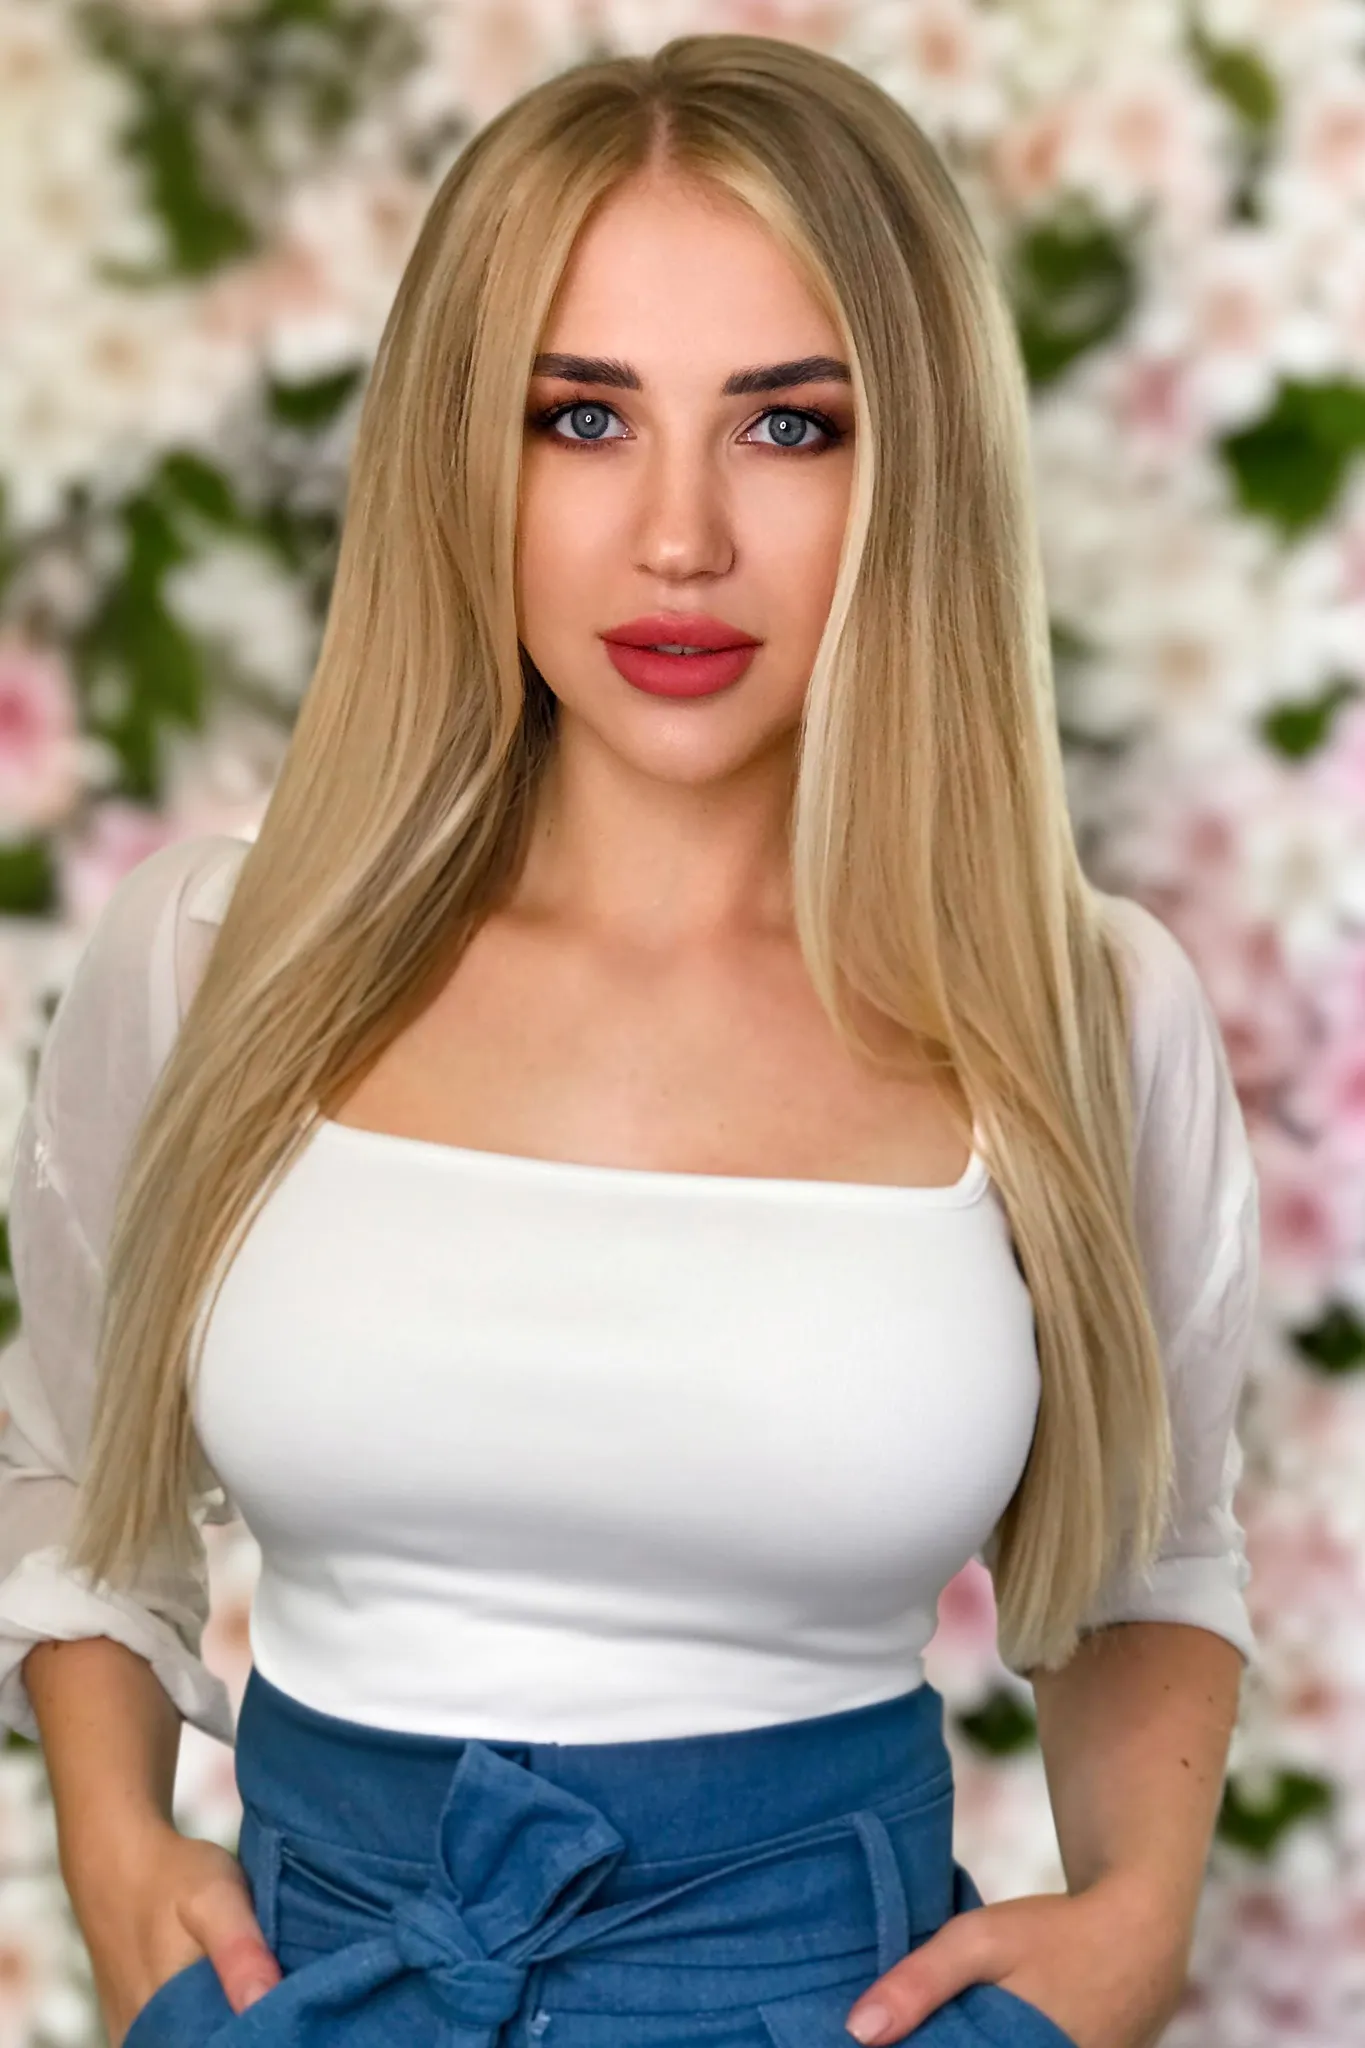 Maria brides of ukraine go date now